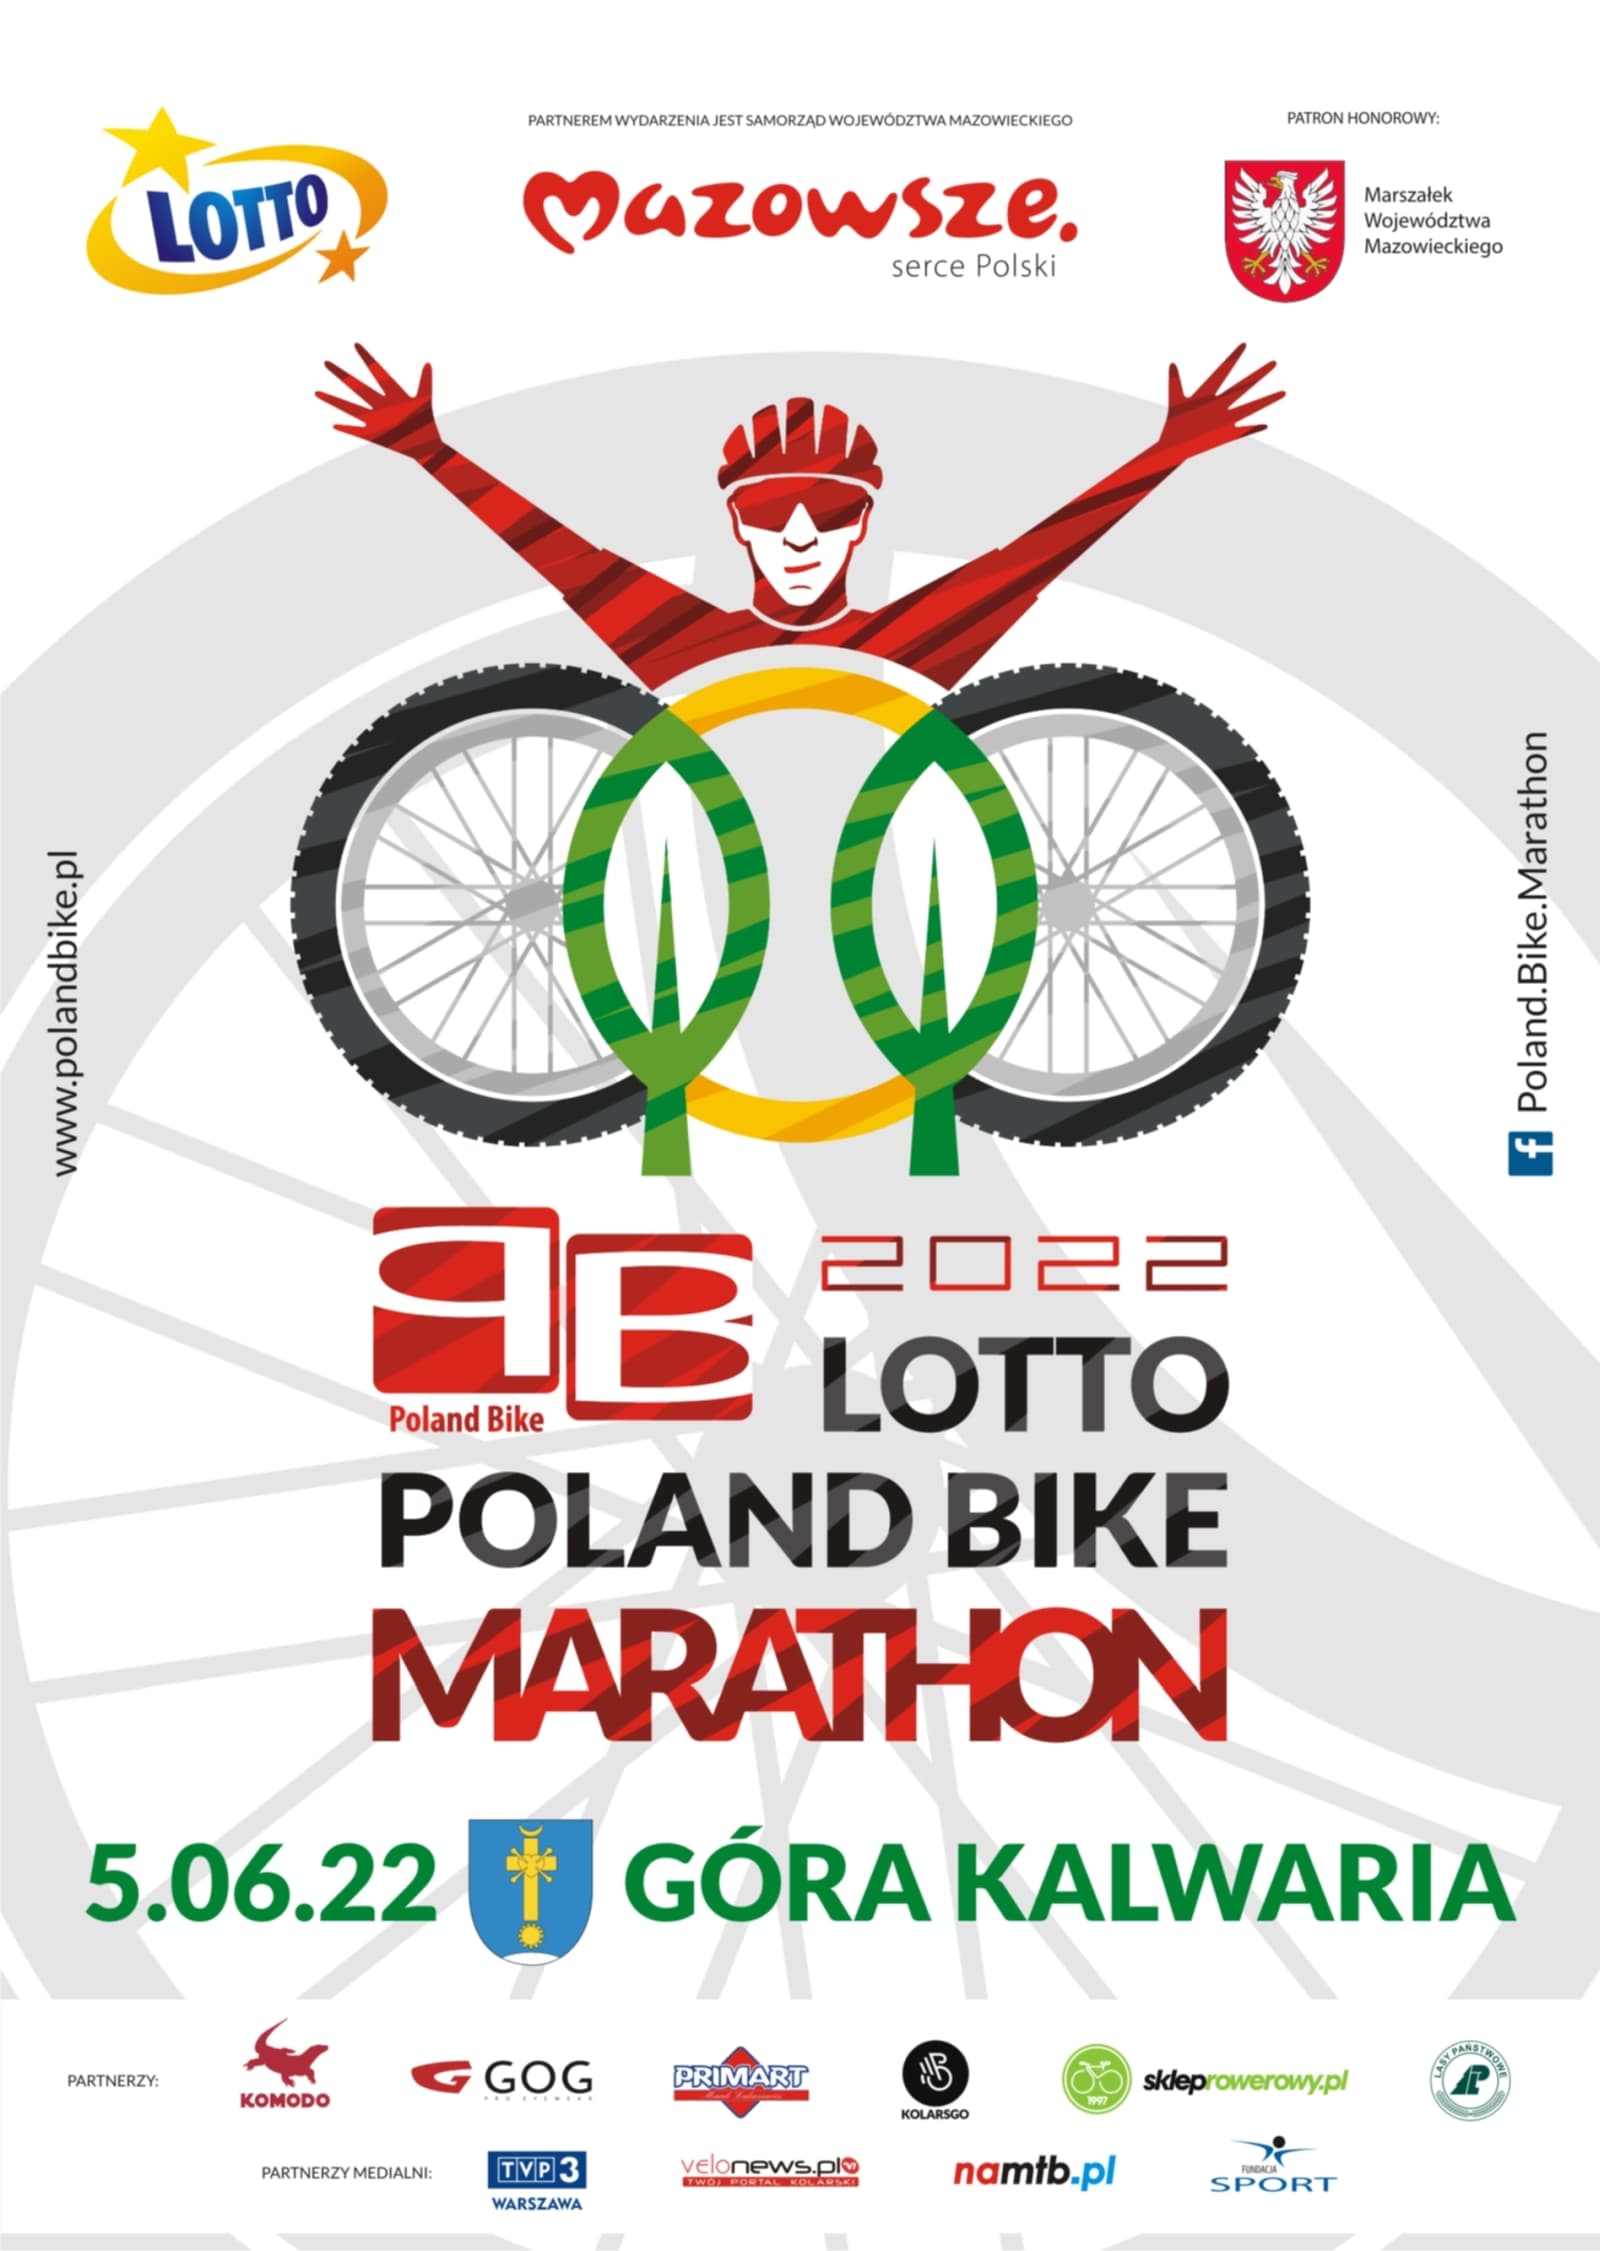 LOTTO Poland Bike Marathon jedzie do Góry Kalwarii